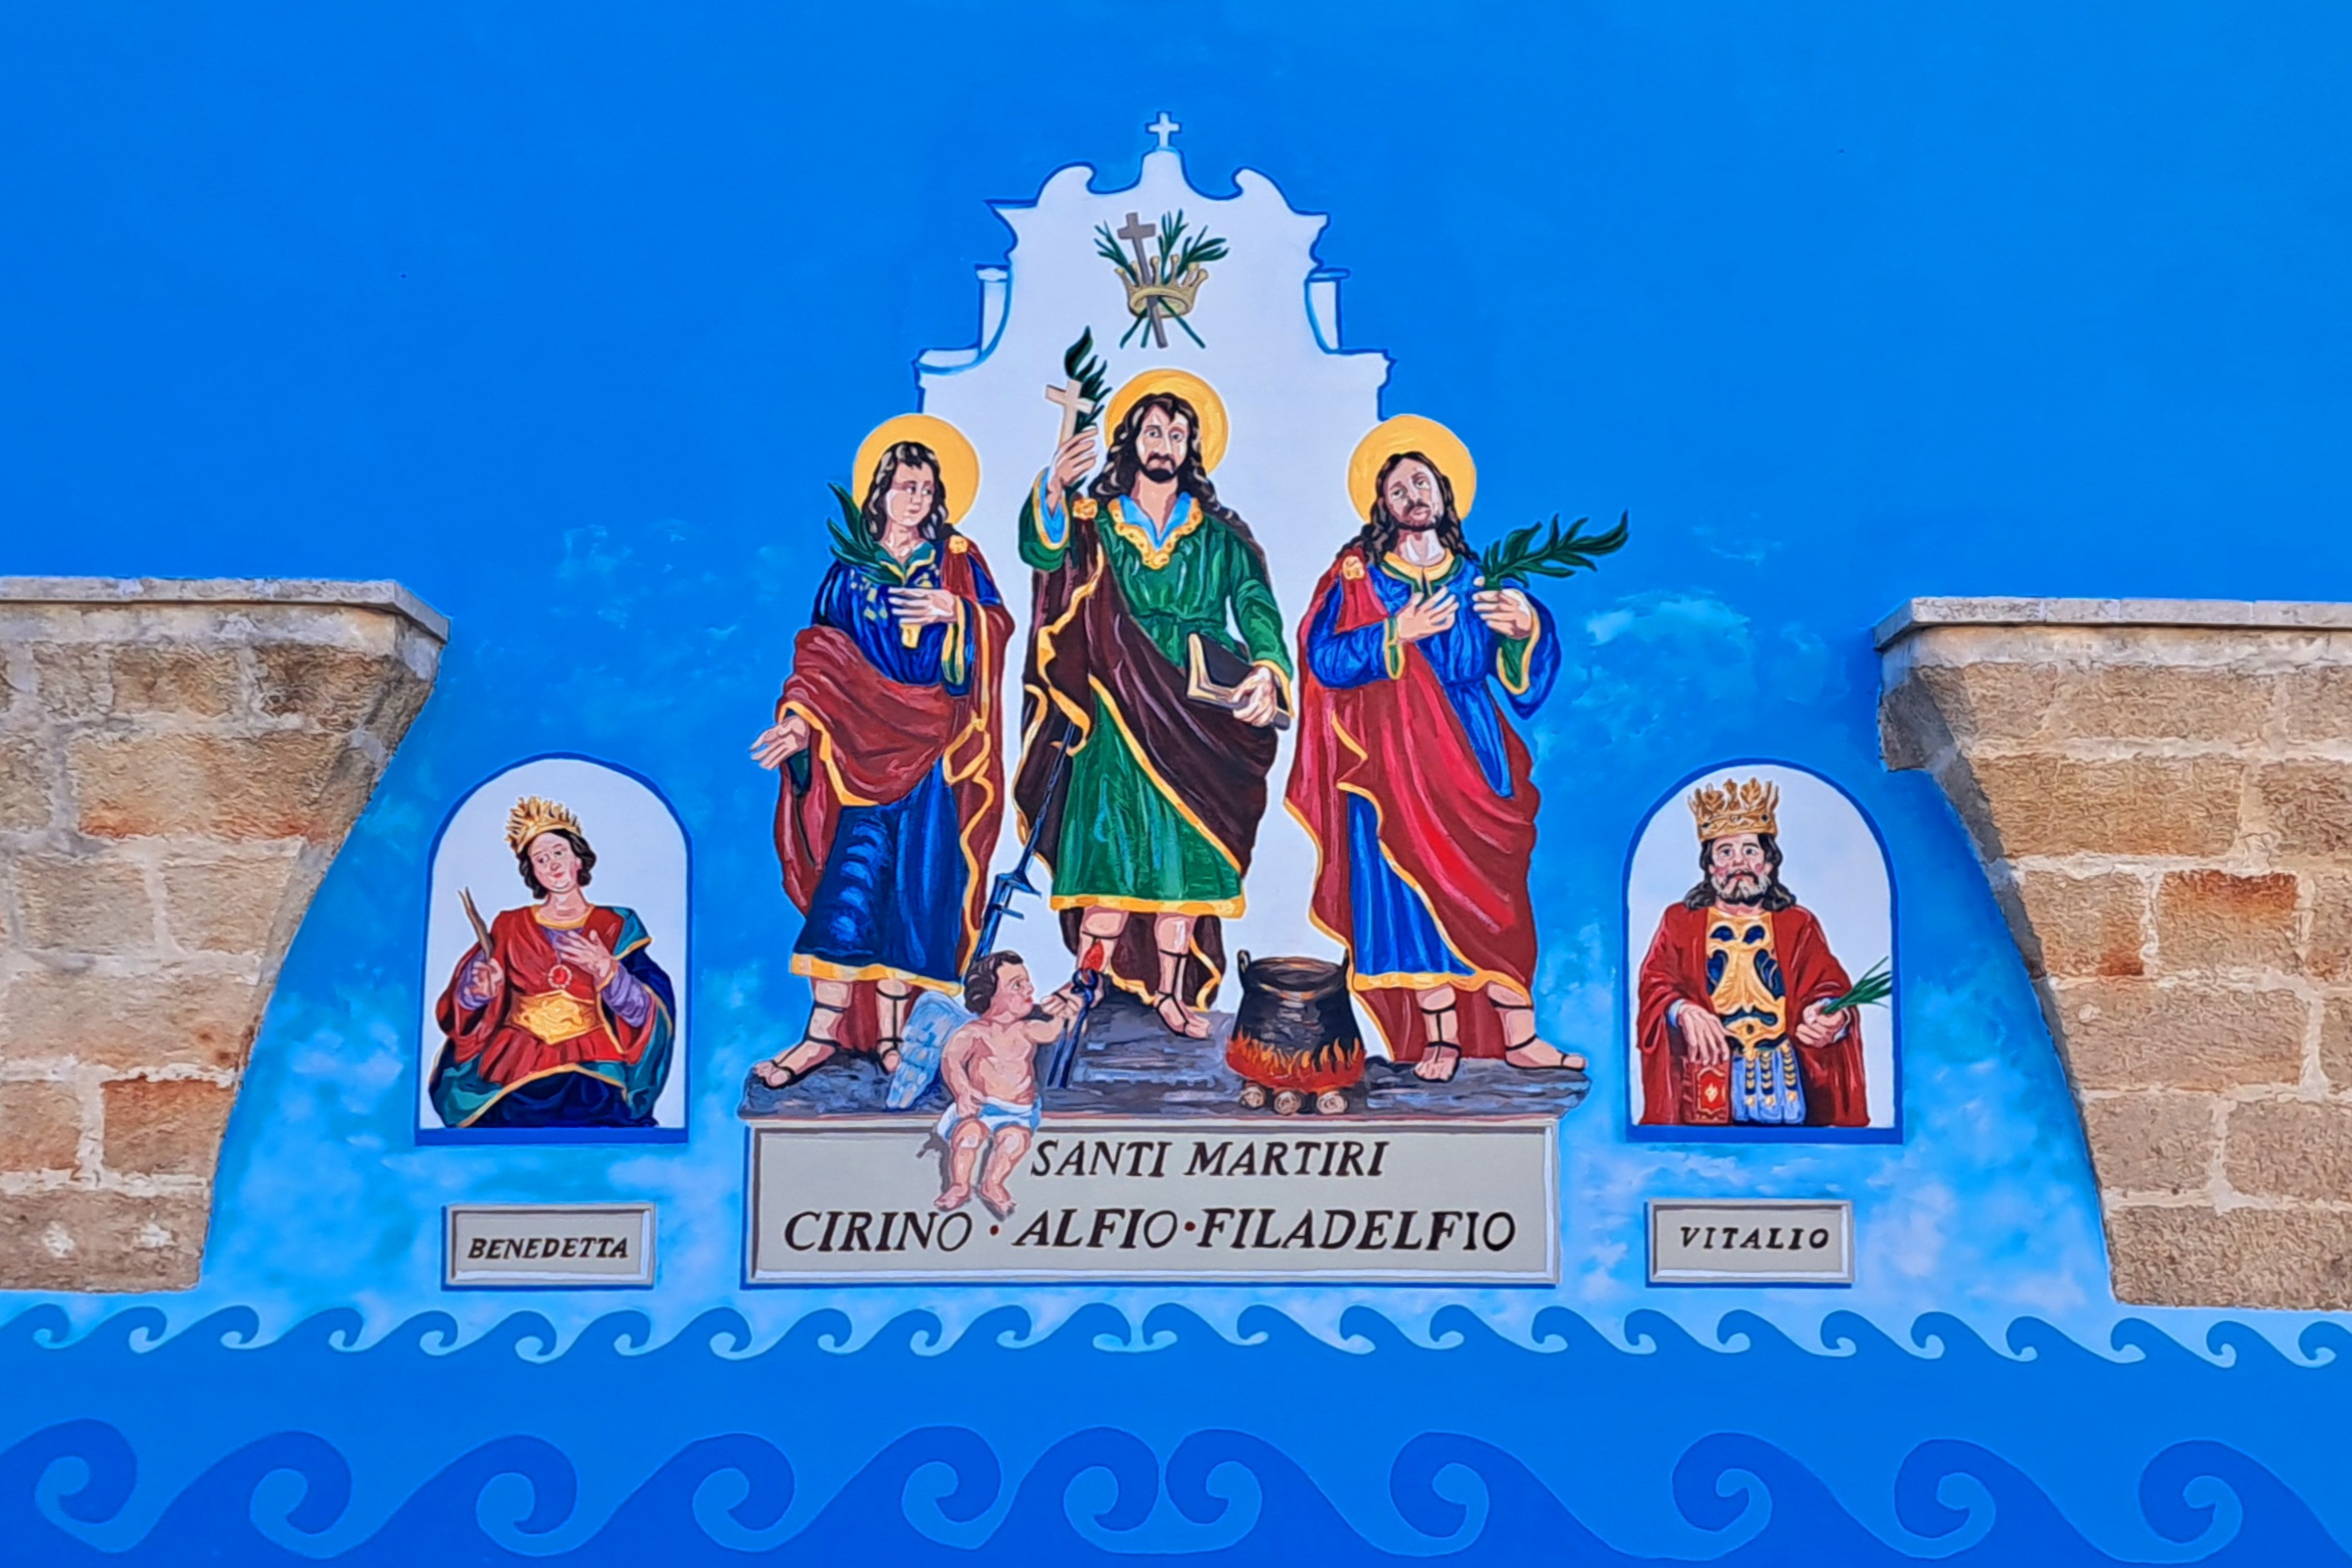 Vaste festeggia i suoi santi protettori Alfio, Filadelfio e Cirino, i tre santi nati nella piccola frazione sud salentina